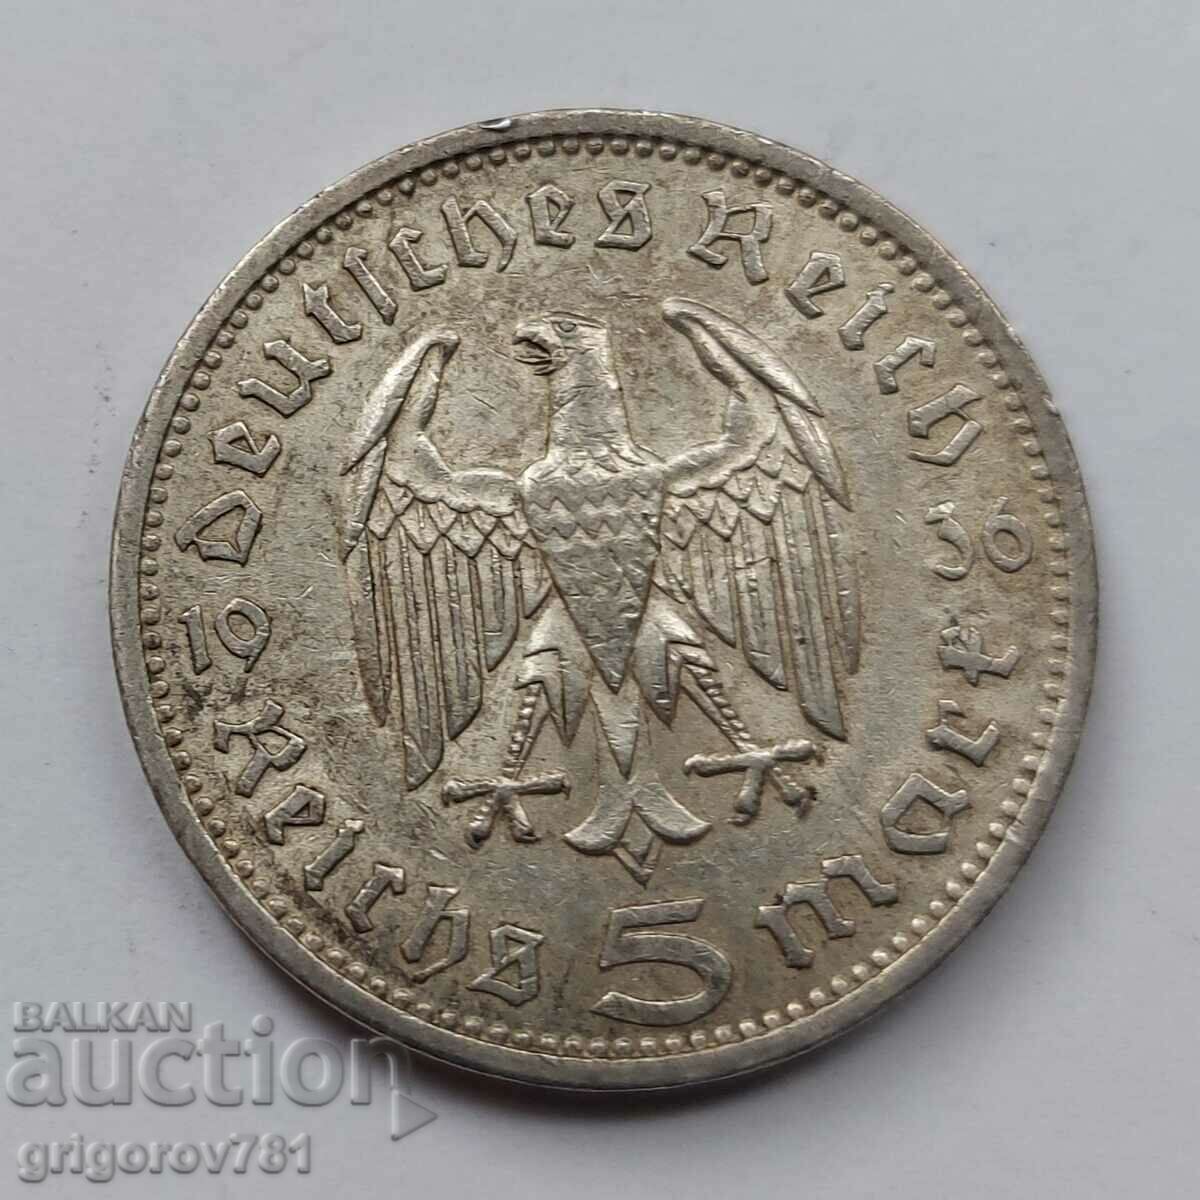 5 γραμματόσημα ασημένιο Γερμανία 1936 Ασημένιο νόμισμα A III Ράιχ №53